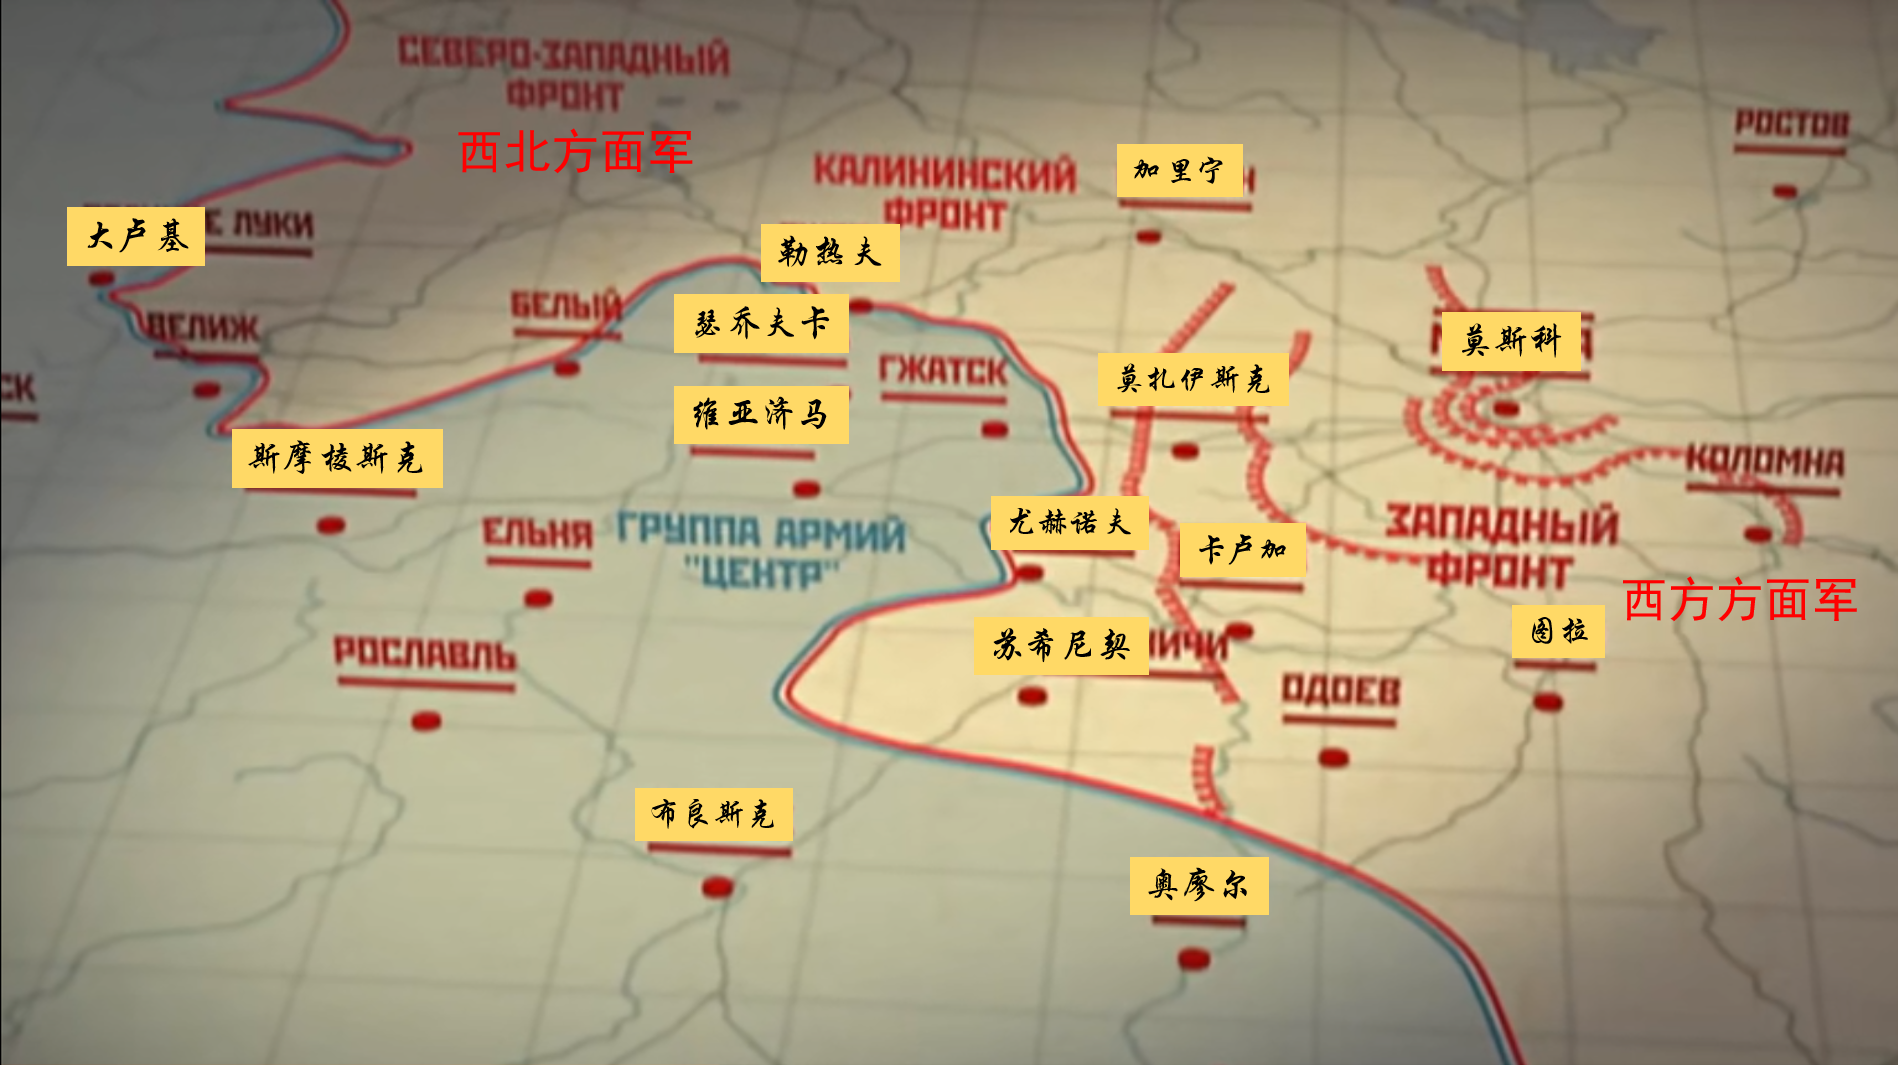 闲话二战·苏联生死存亡之役:莫斯科保卫战